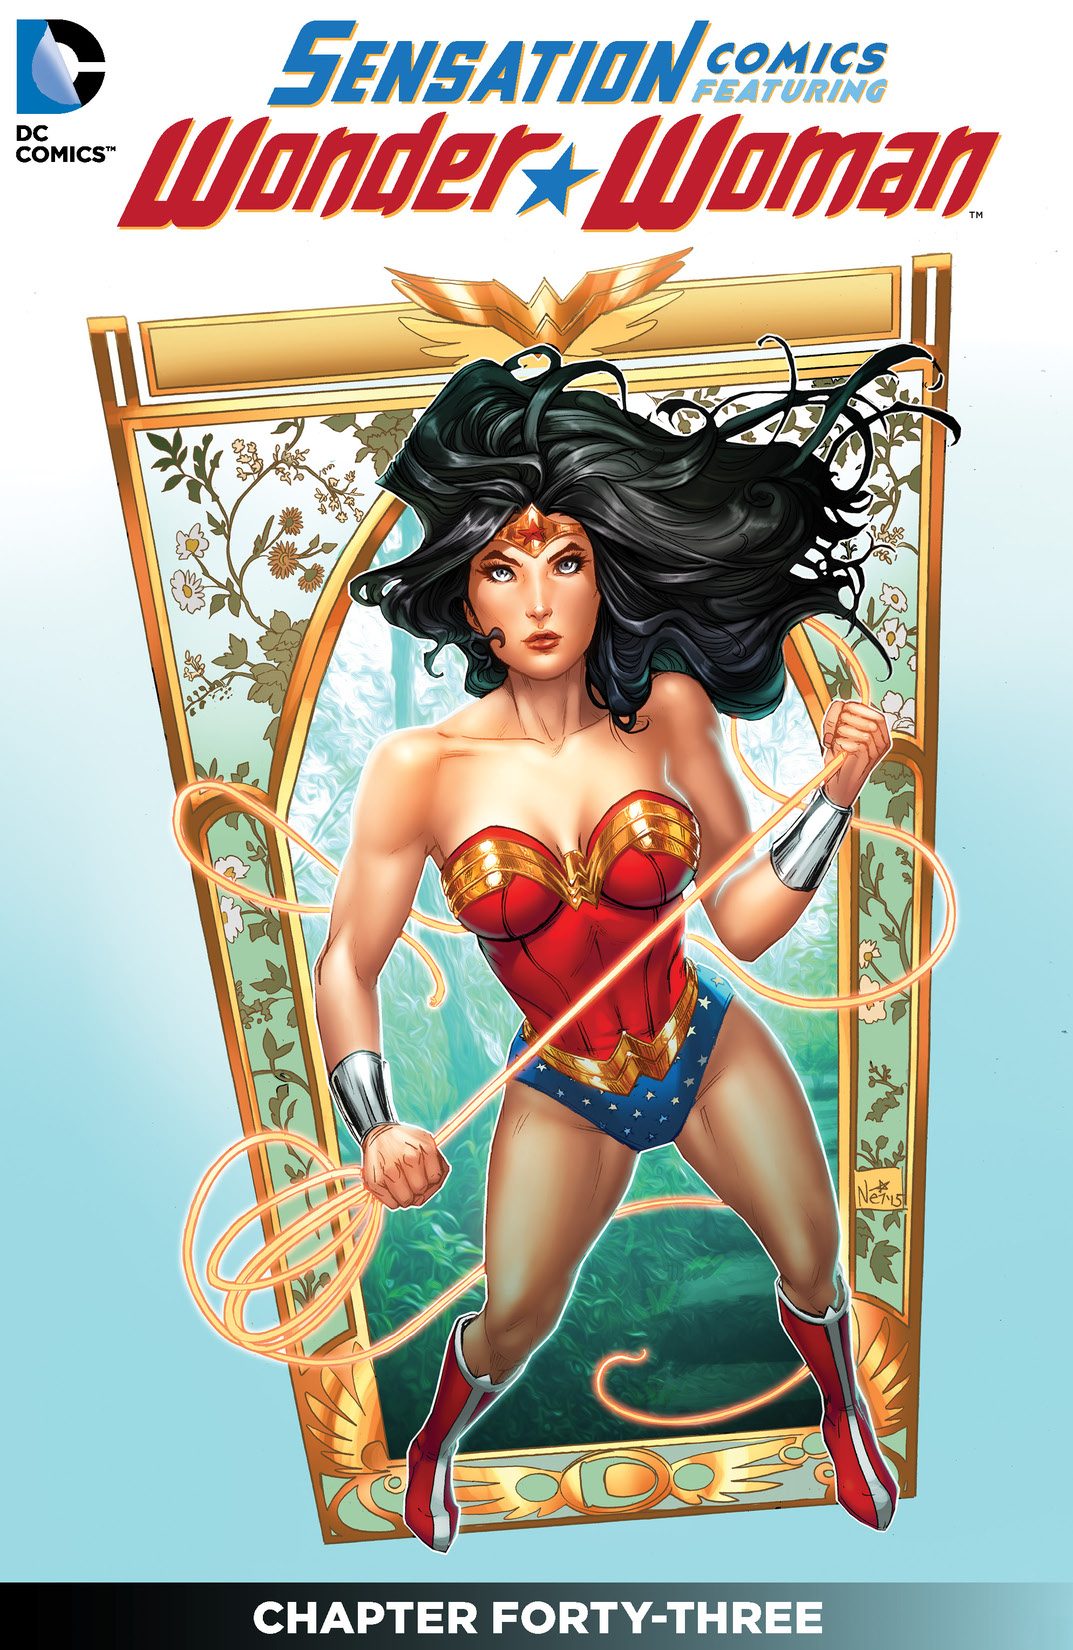 Sensation Comics Featuring Wonder Woman #43 preview images